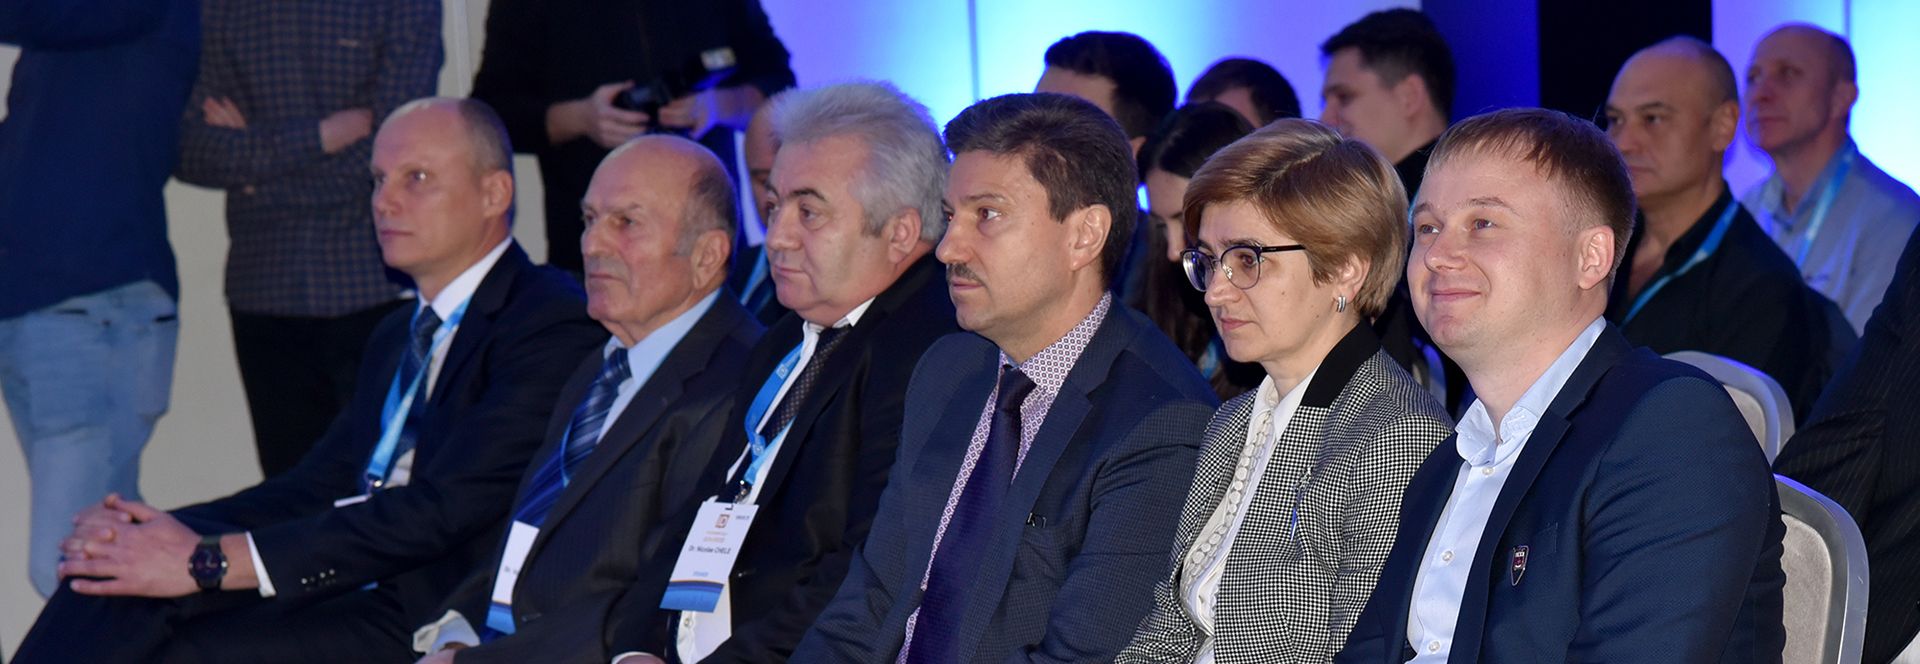 Congresul internațional ImplantoDays la Chișinău